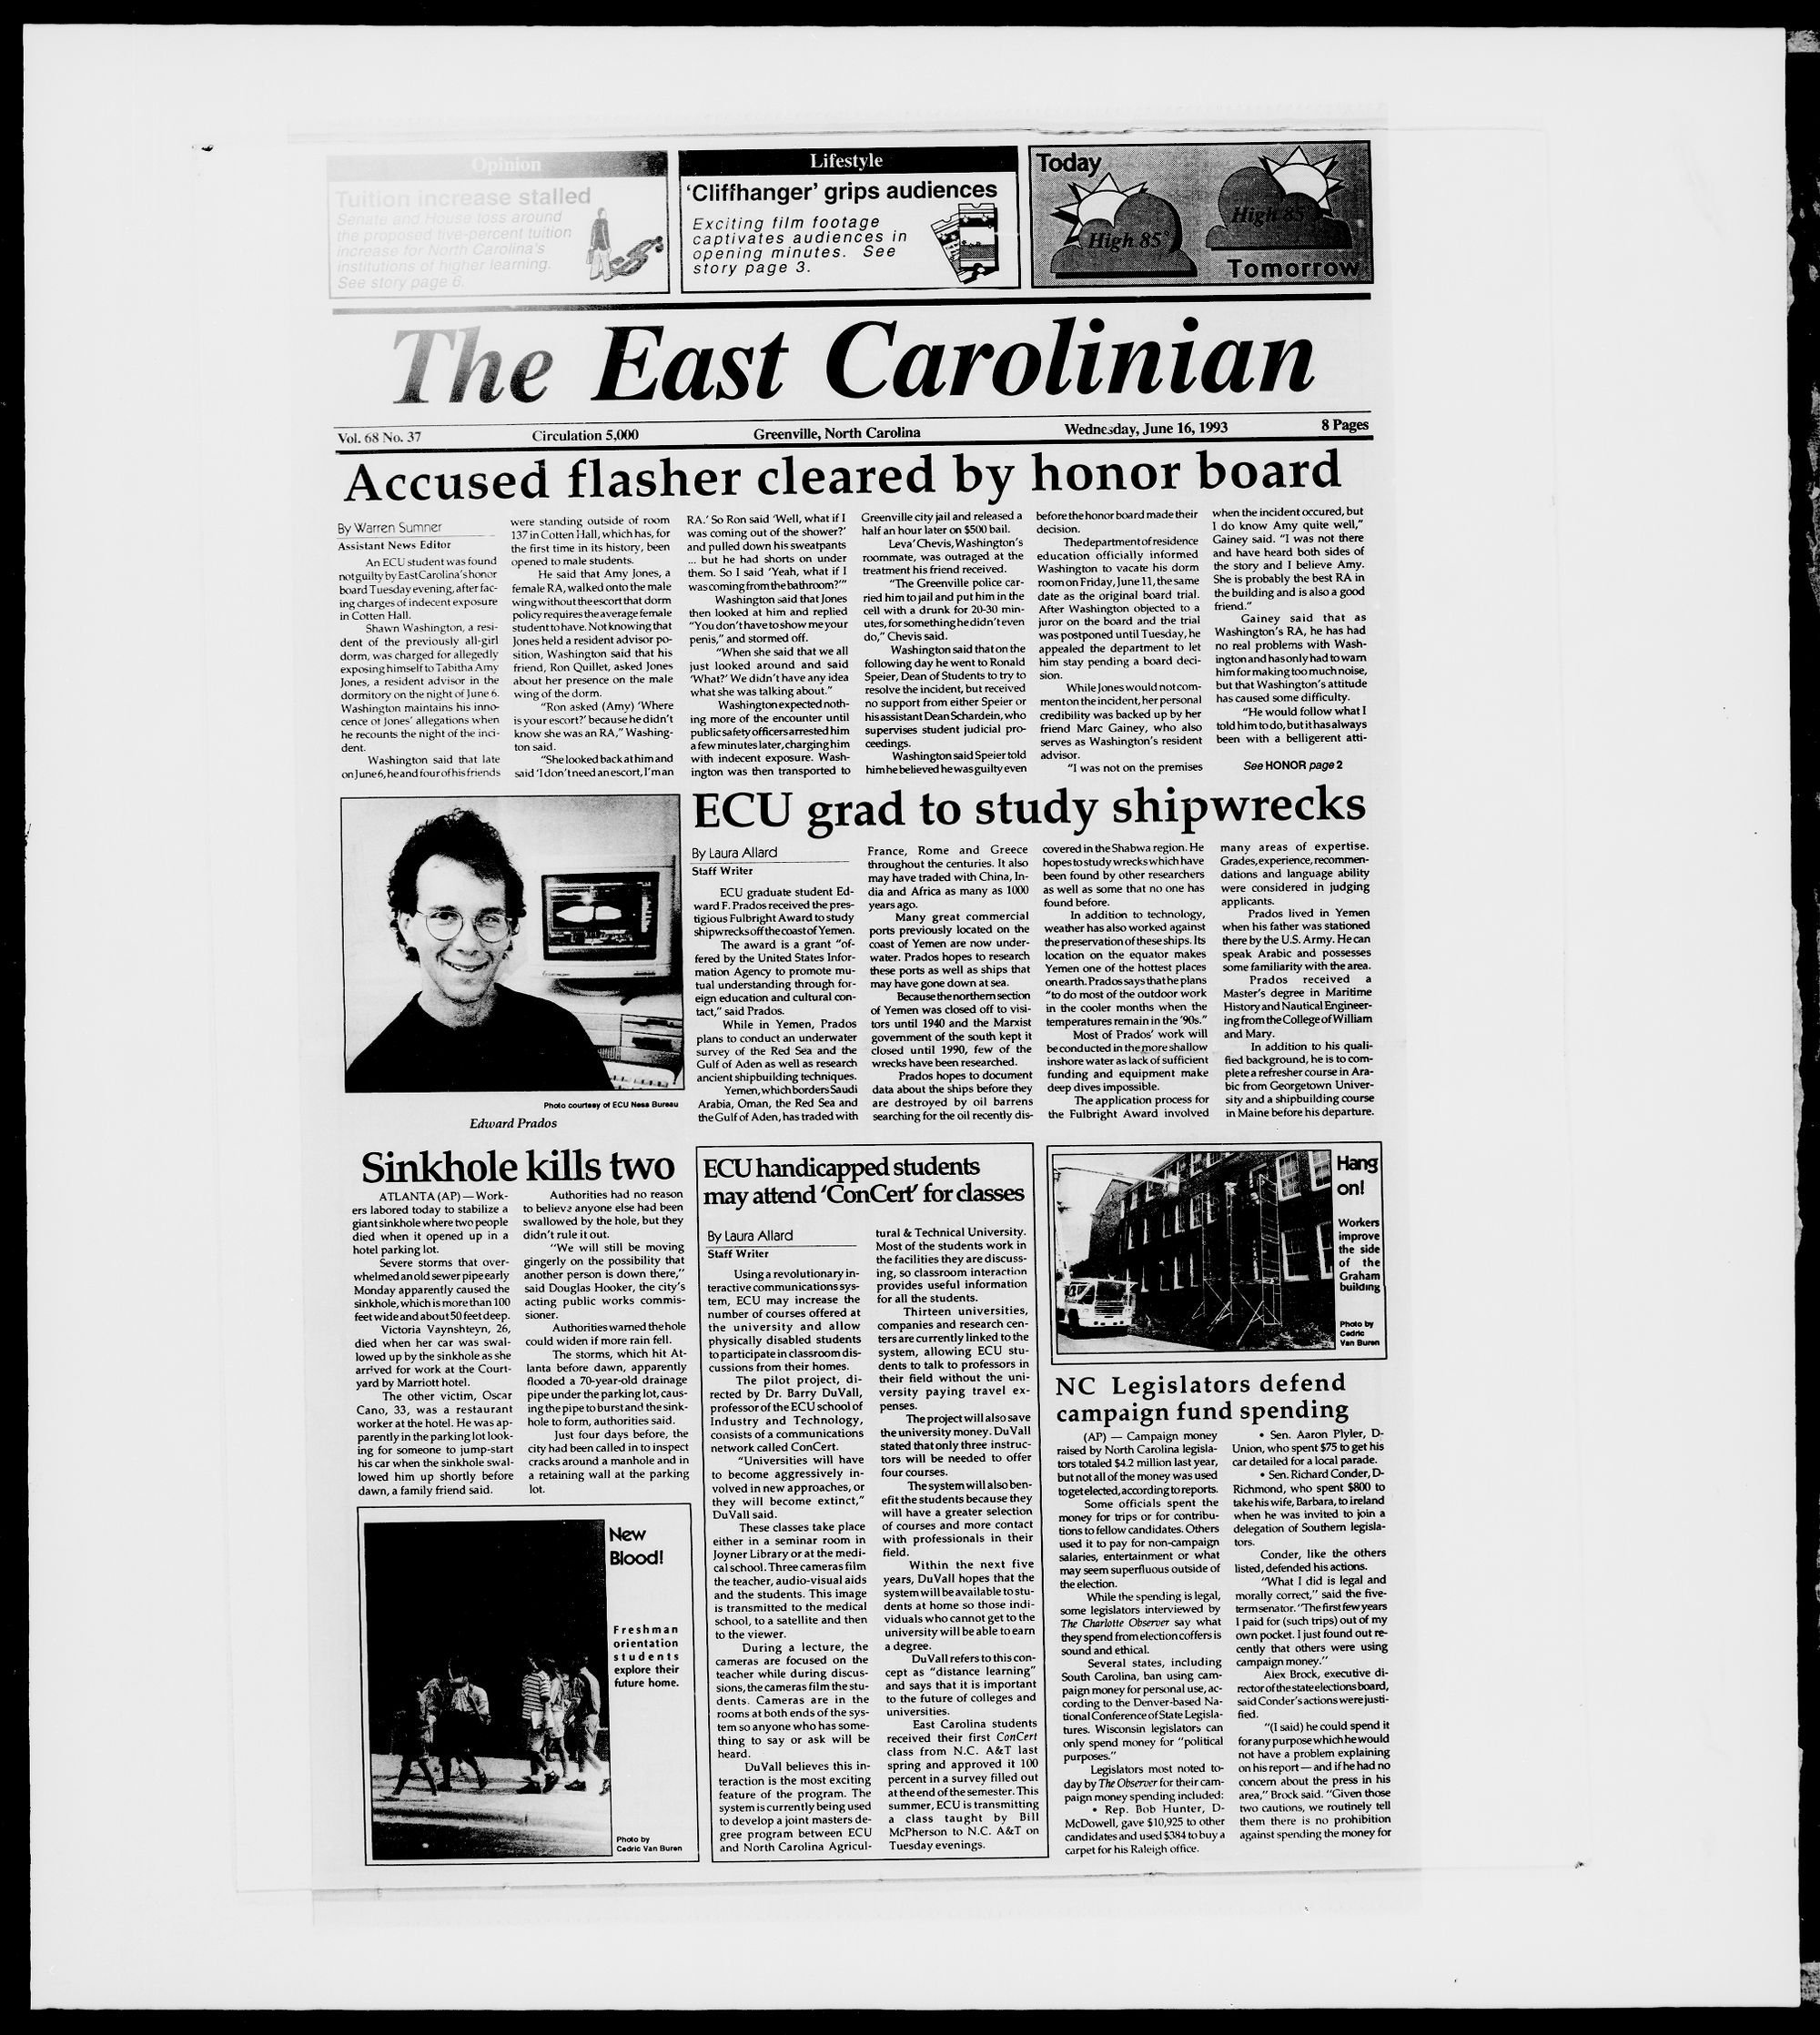 The East Carolinian, June 16, 1993